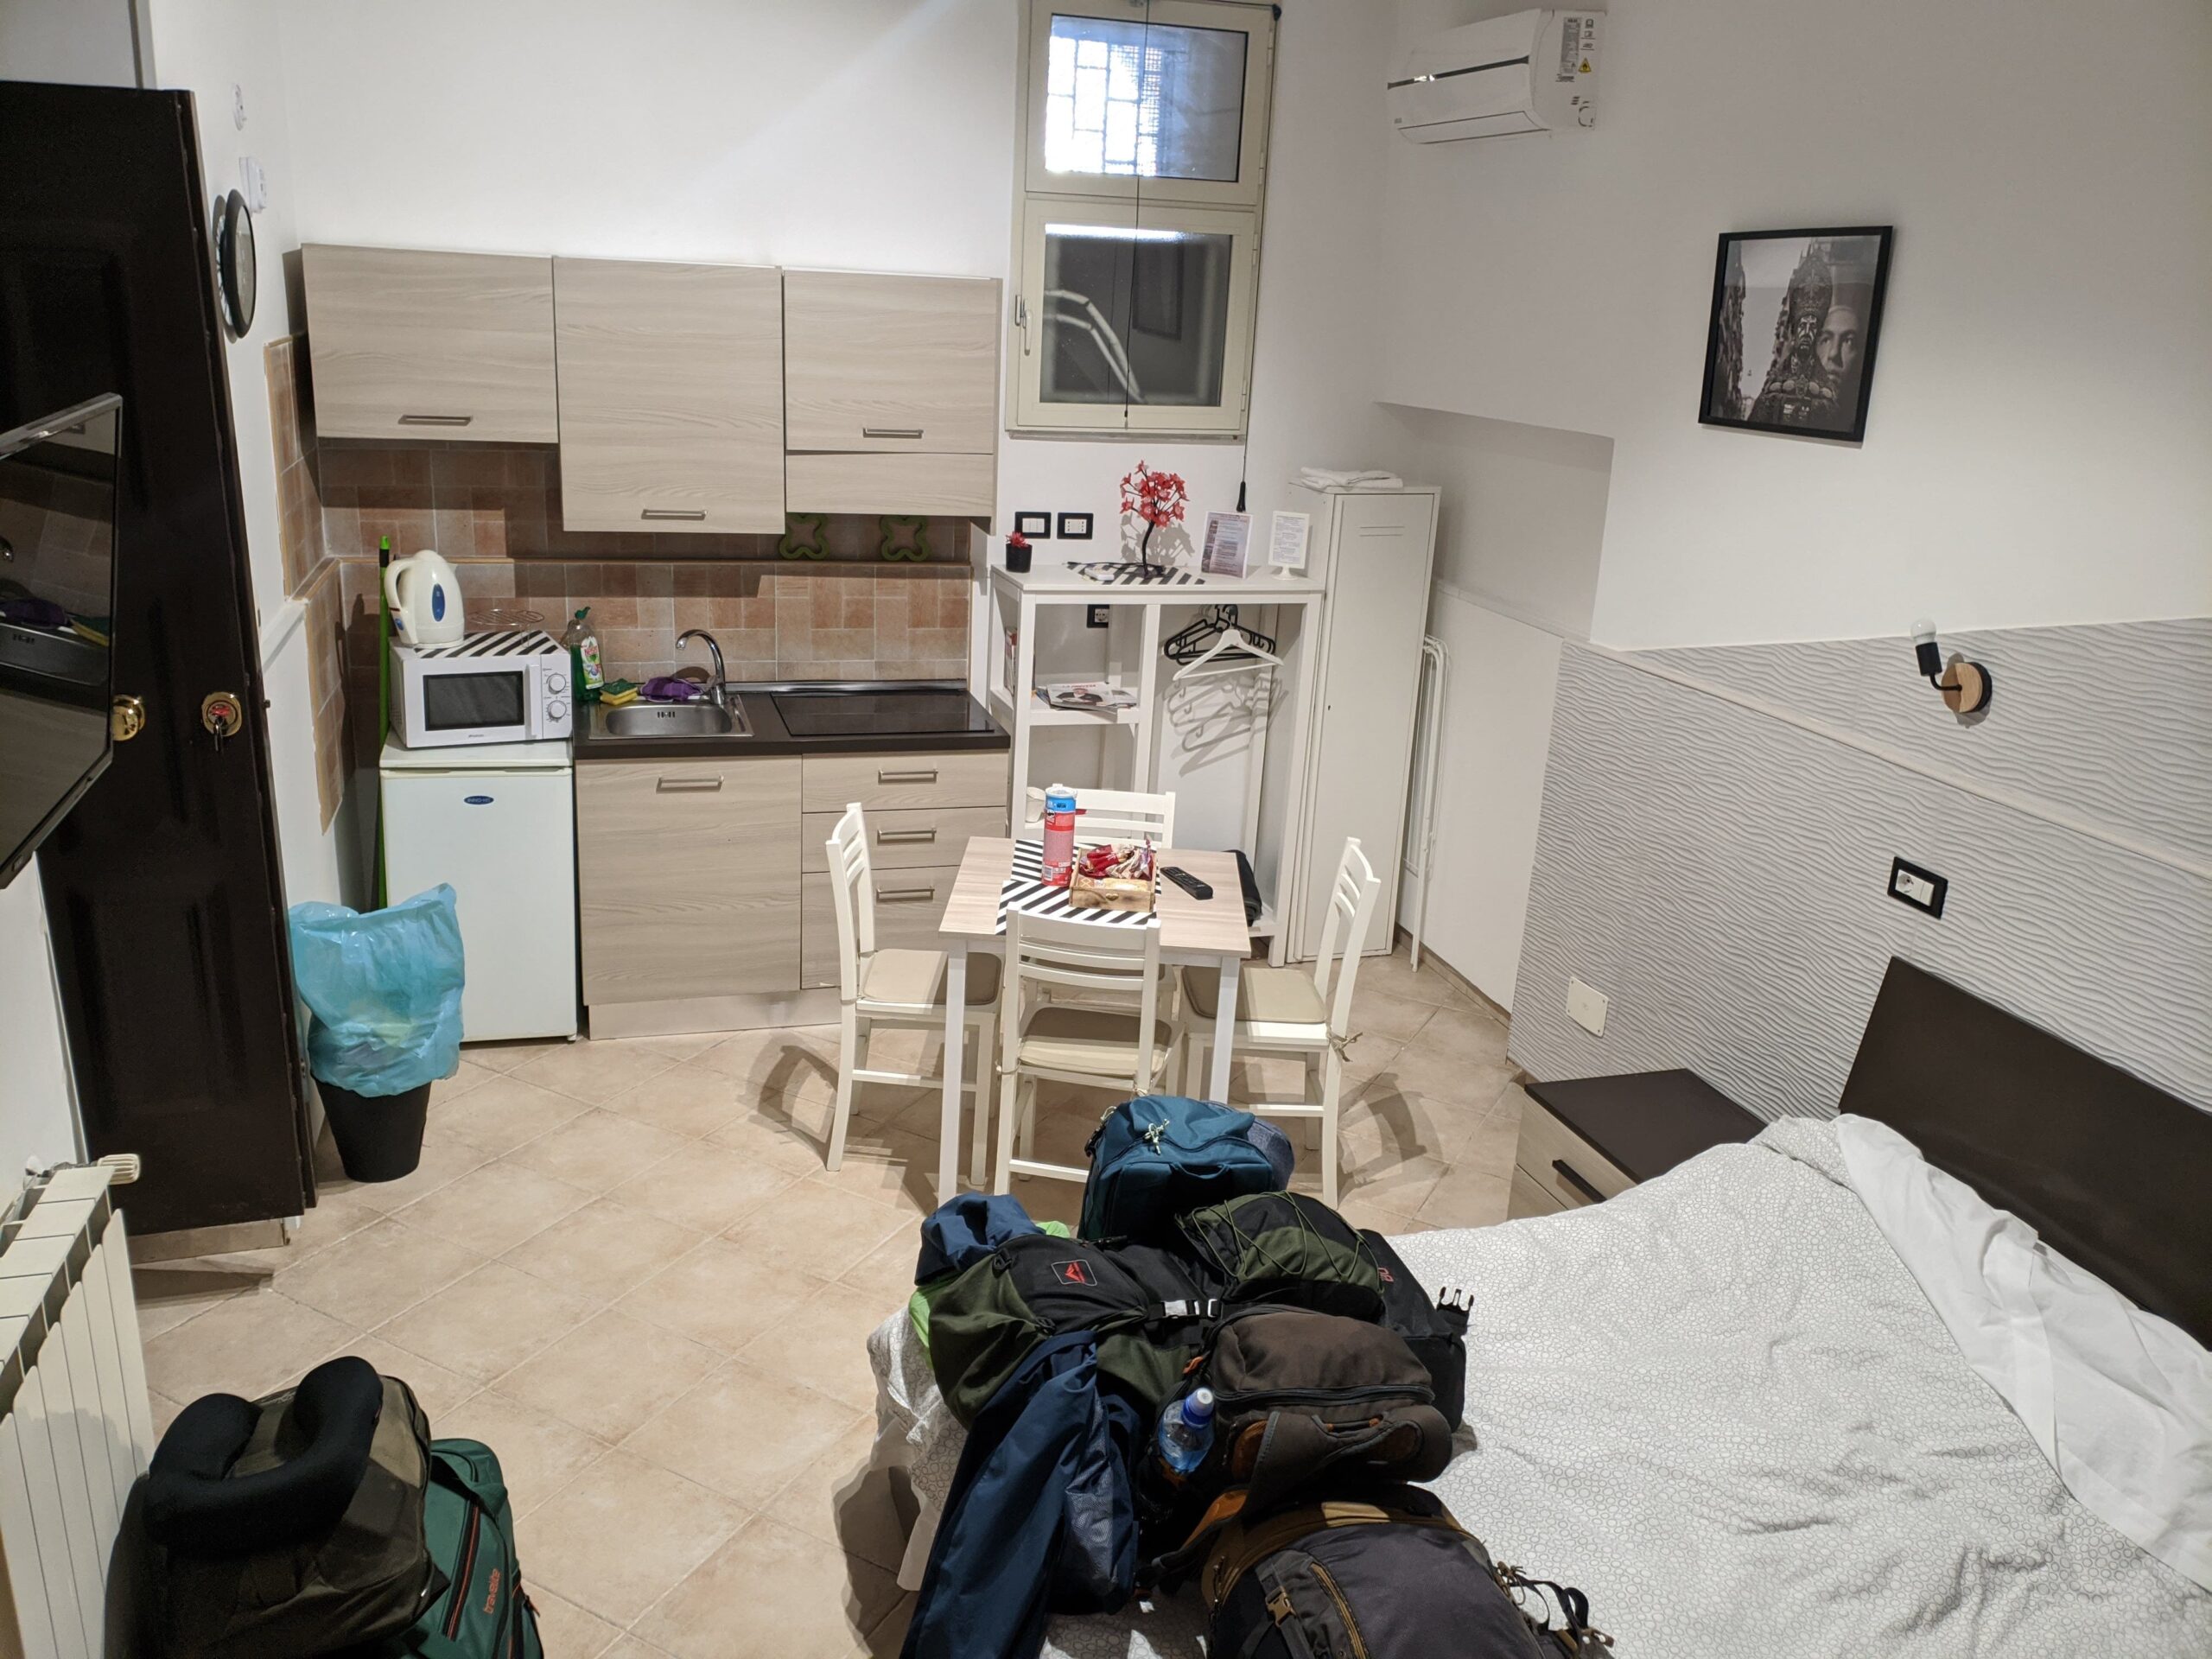 Foto de um quarto, com uma cama, uma pequena cozinha ao lado, uma mesa ao lado da cama e em frente a cozinha e mochilhas em cima da cama.